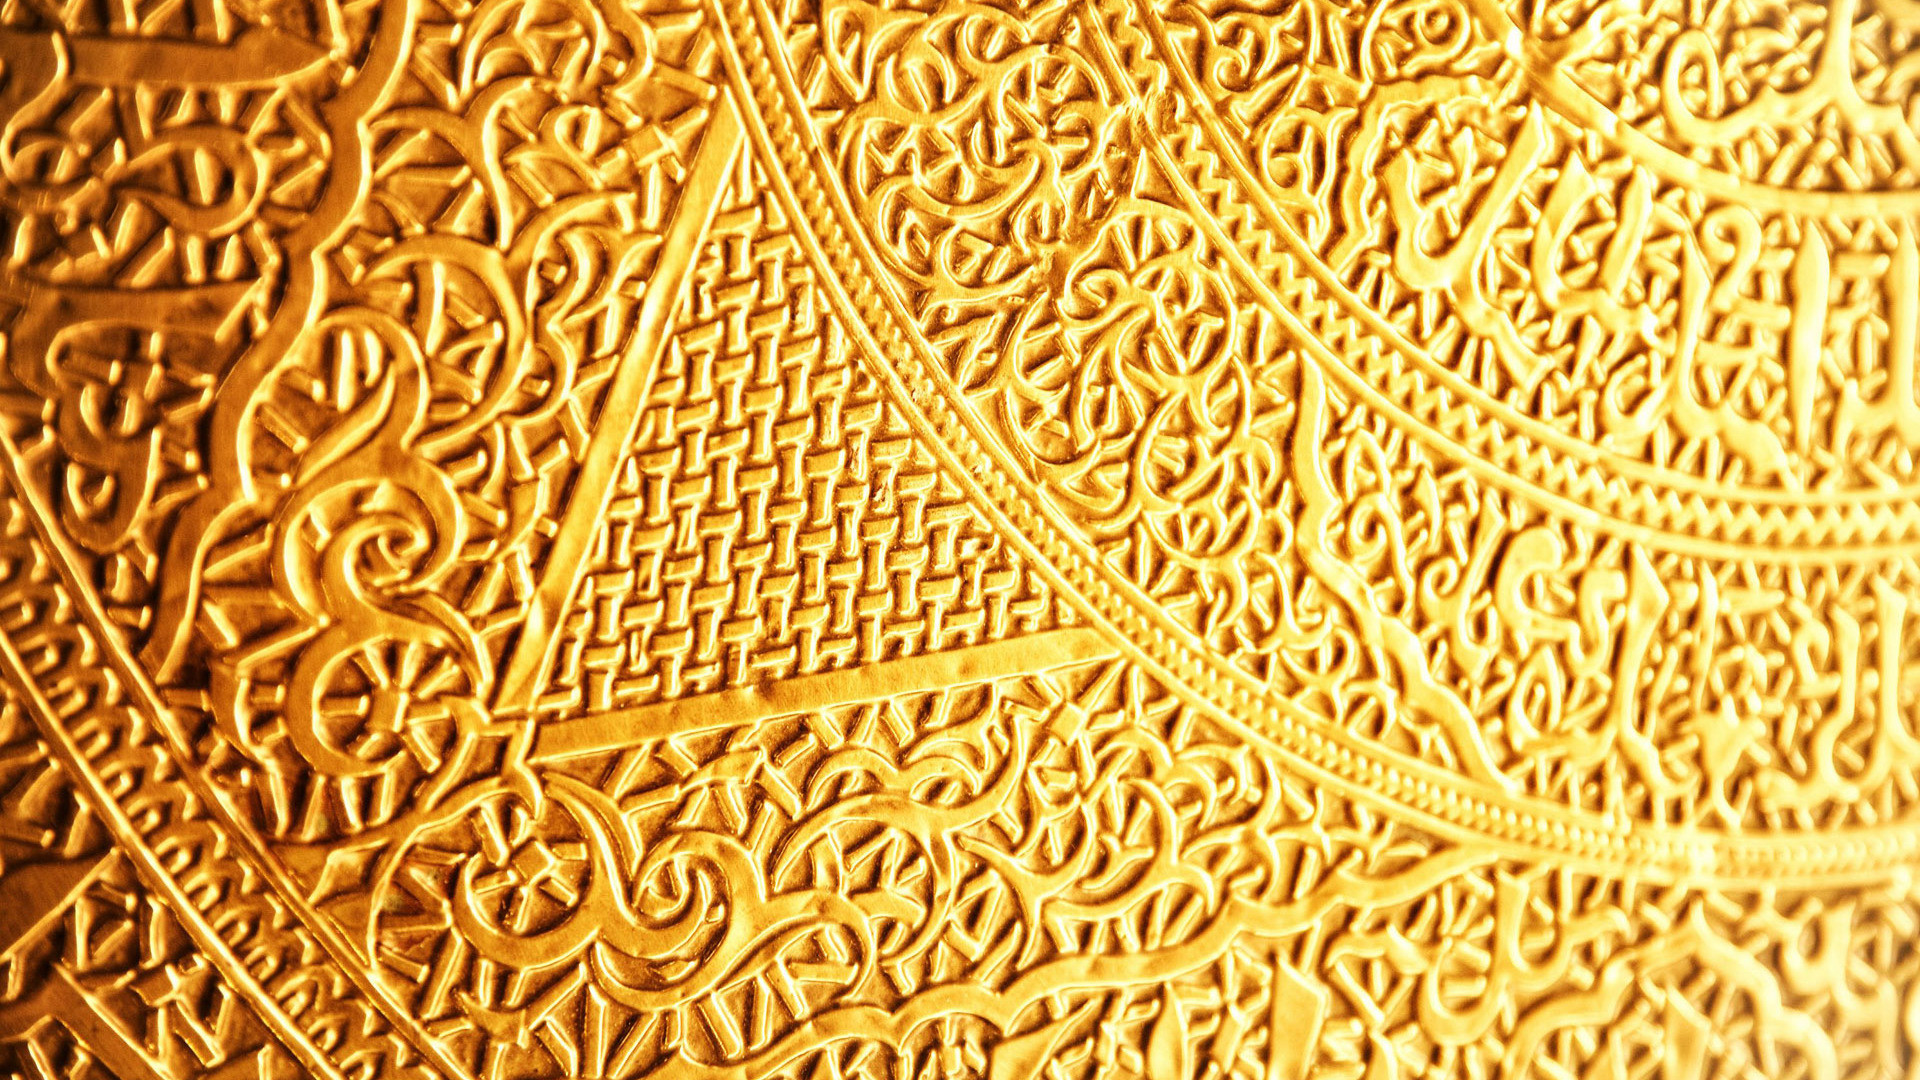 Gold Wallpaper